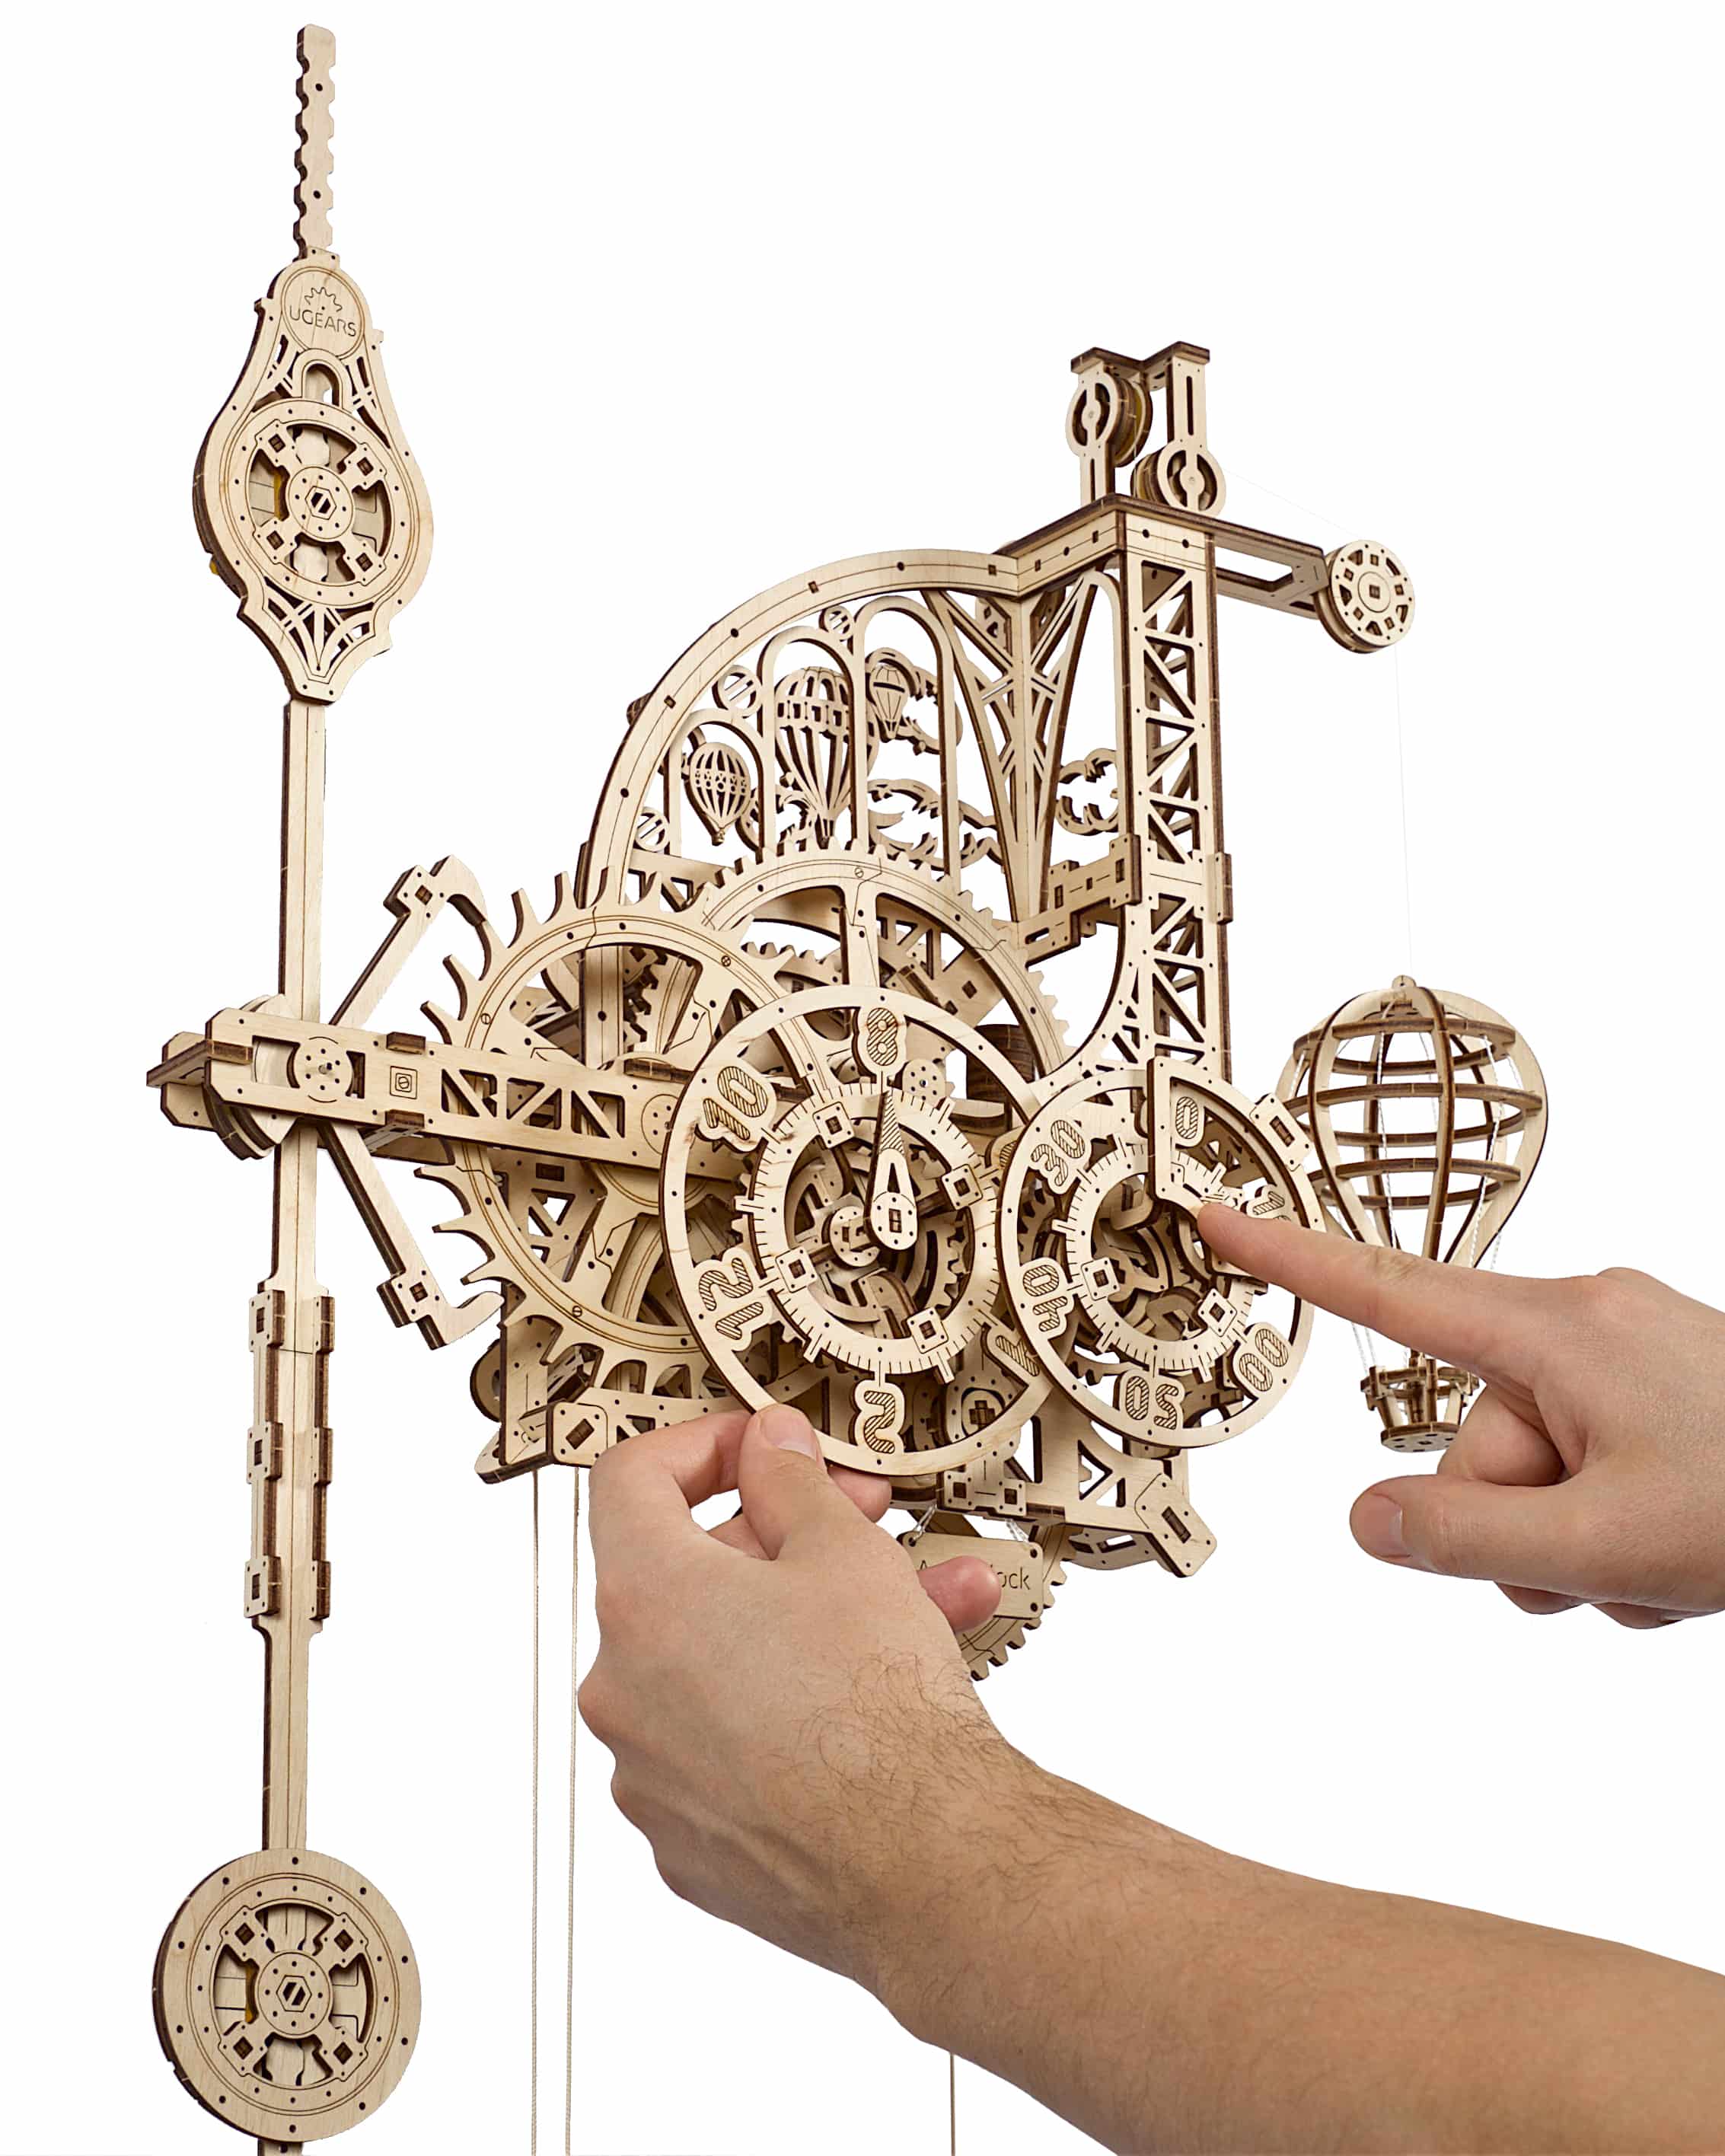 3D-Holzpuzzle Wanduhr mit Pendel